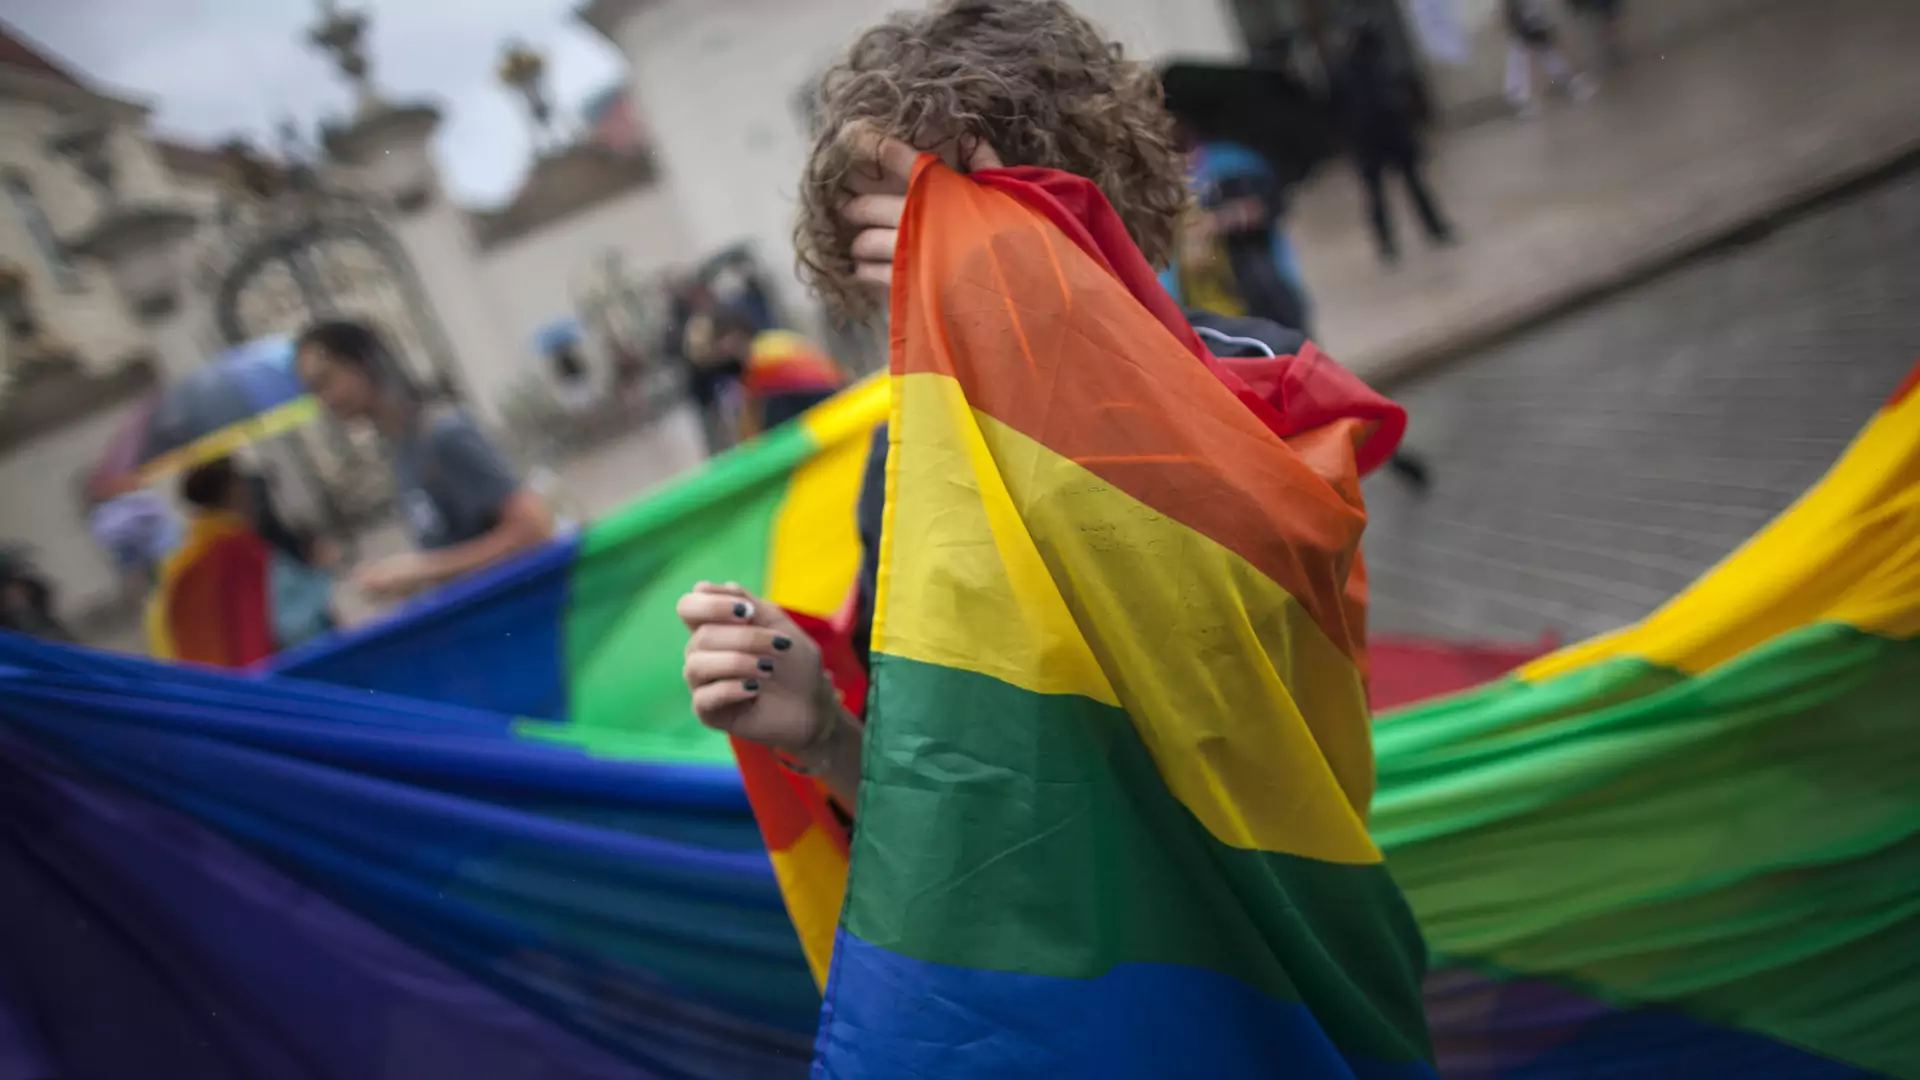 Homofobia kosztuje Polaków nawet 9,5 mld zł rocznie. Firmy nie chcą inwestować w strefach anty-LGBT